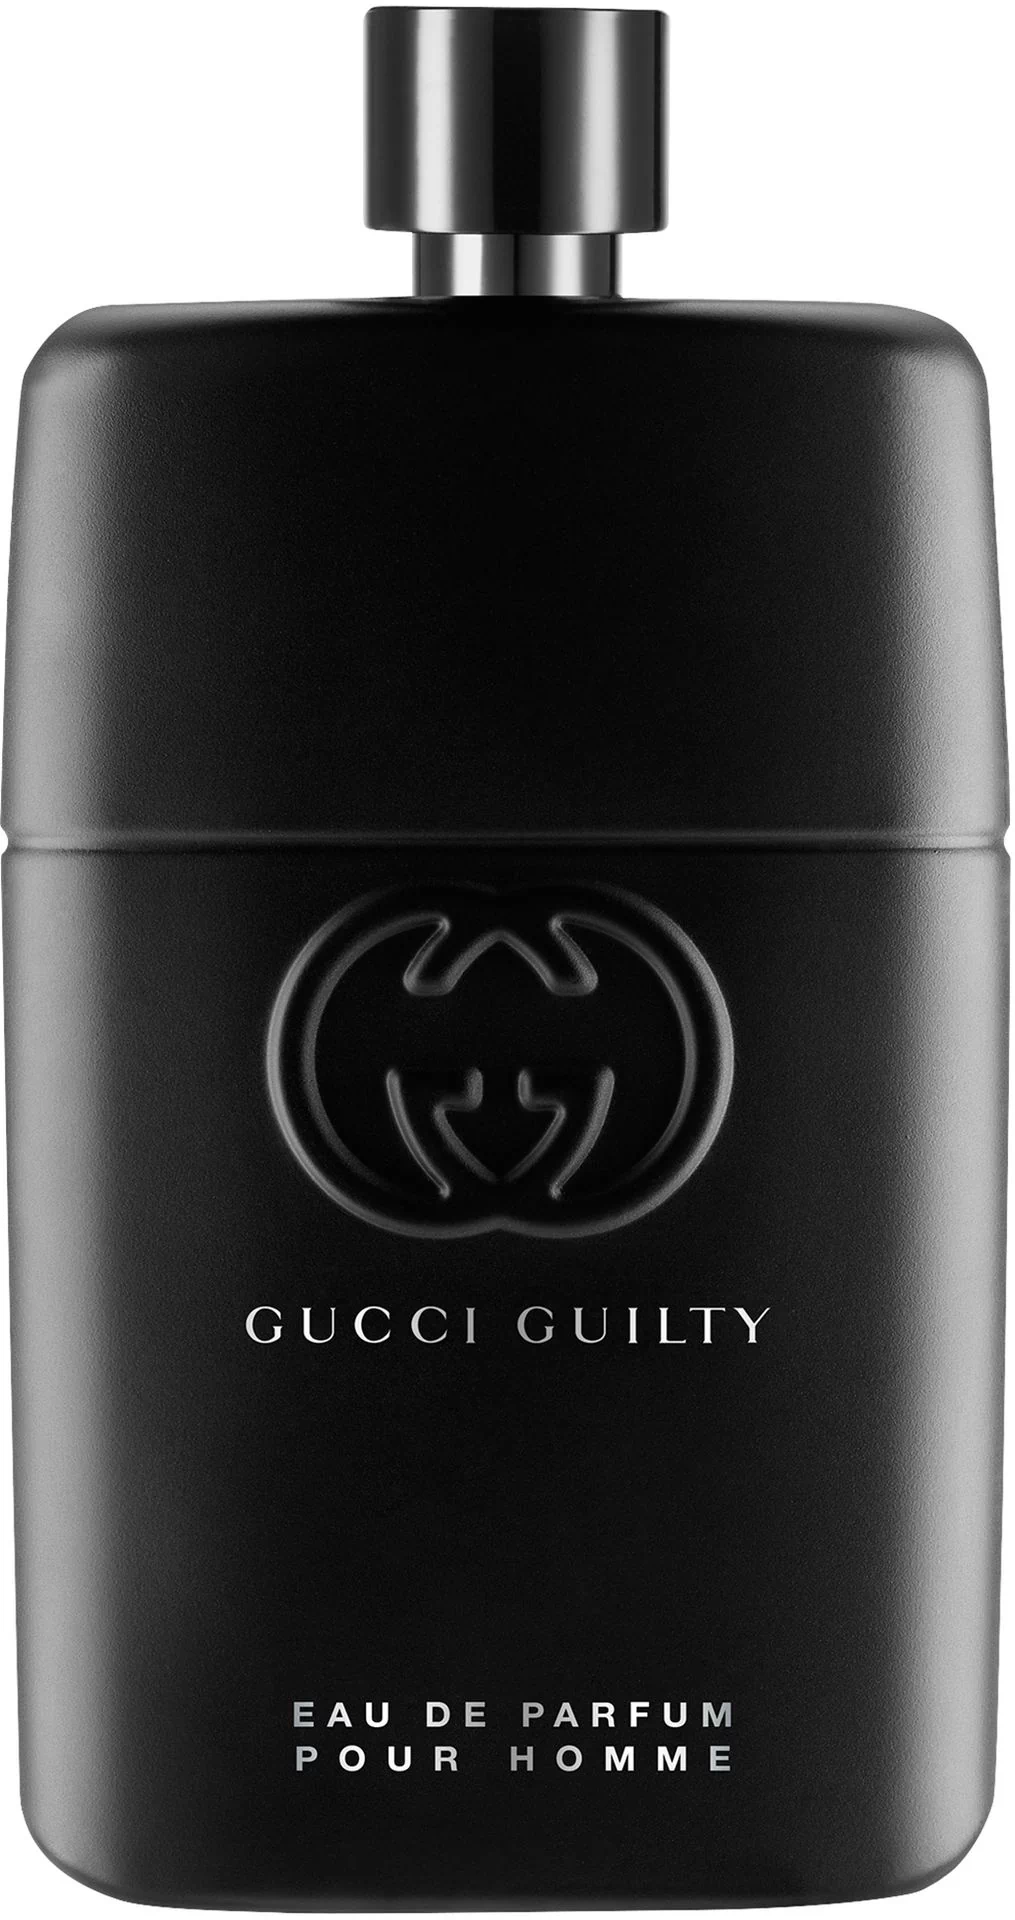 Gucci Guilty Pour Homme woda perfumowana 150ml - Ceny i opinie na Skapiec.pl